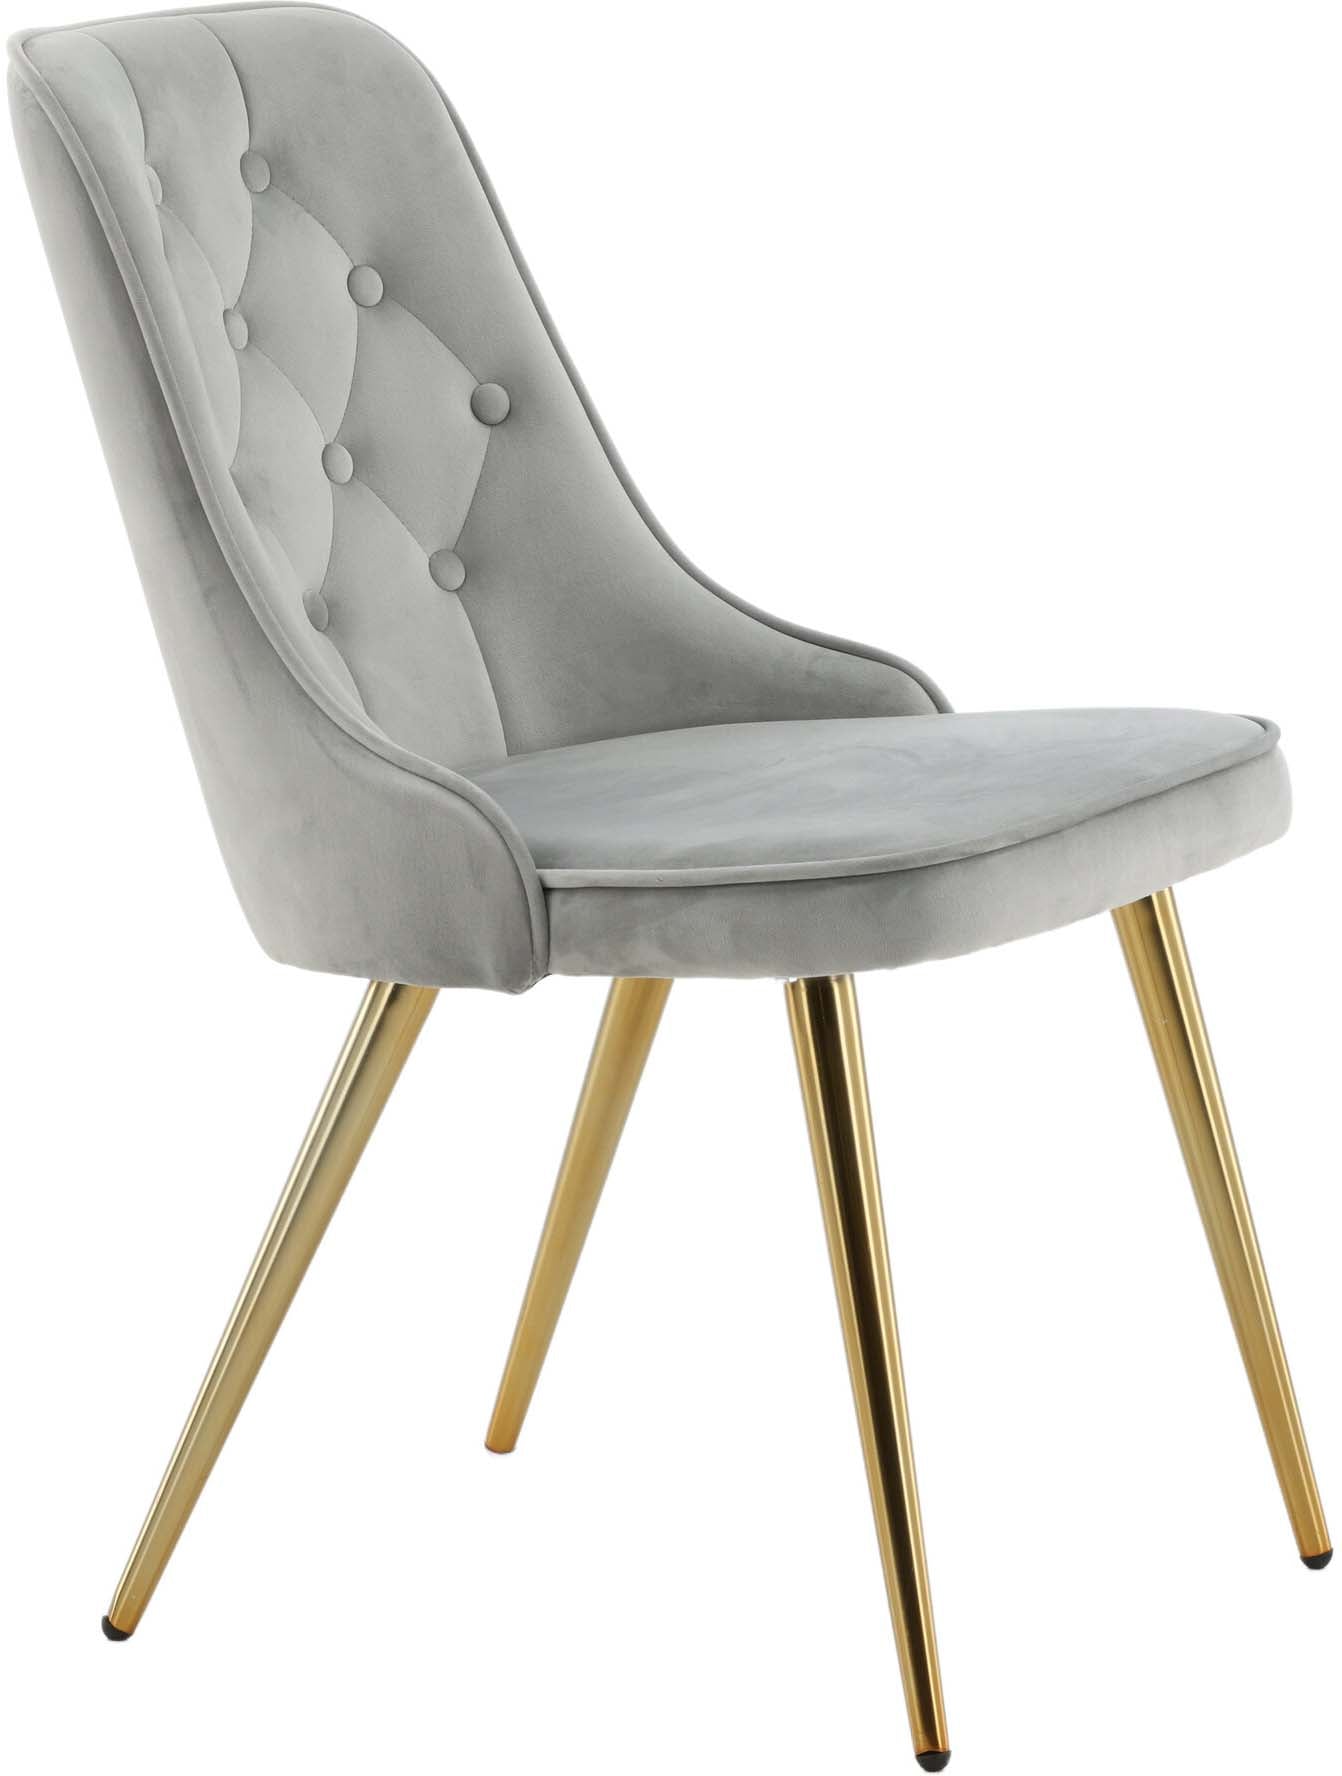 Velvet Deluxe Stuhl in Grau / Gold präsentiert im Onlineshop von KAQTU Design AG. Stuhl ist von Venture Home